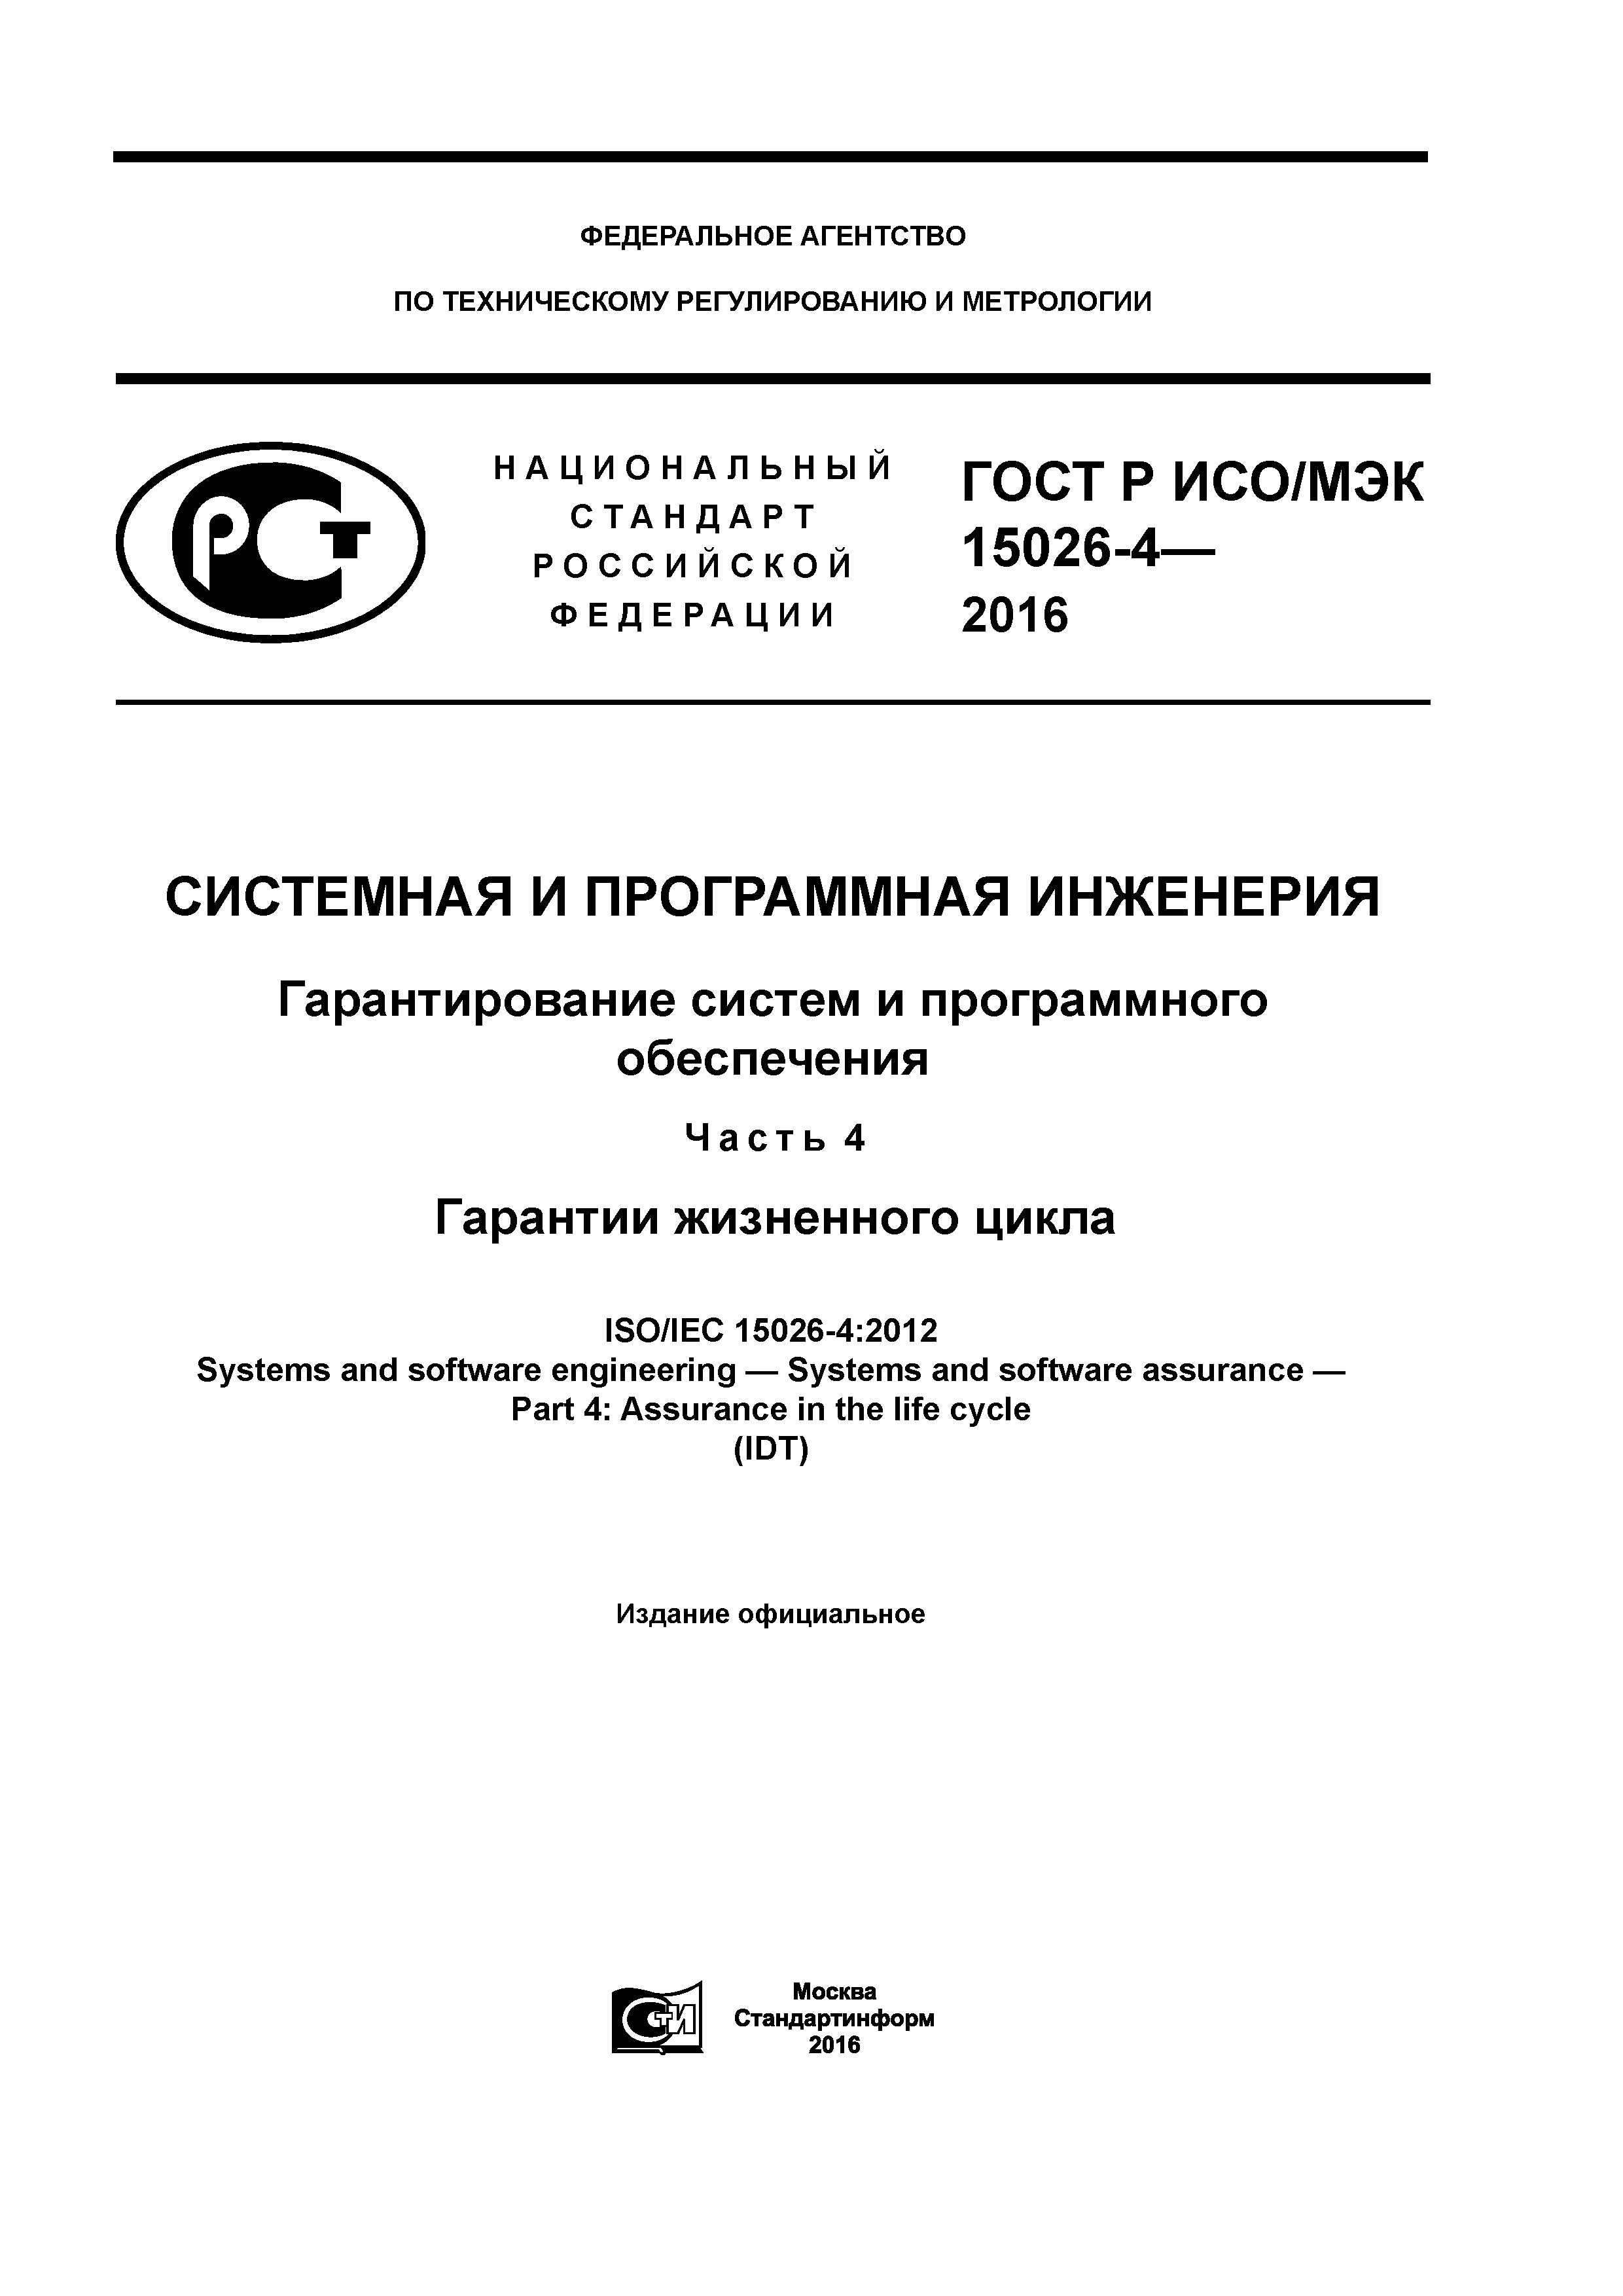 ГОСТ Р ИСО/МЭК 15026-4-2016